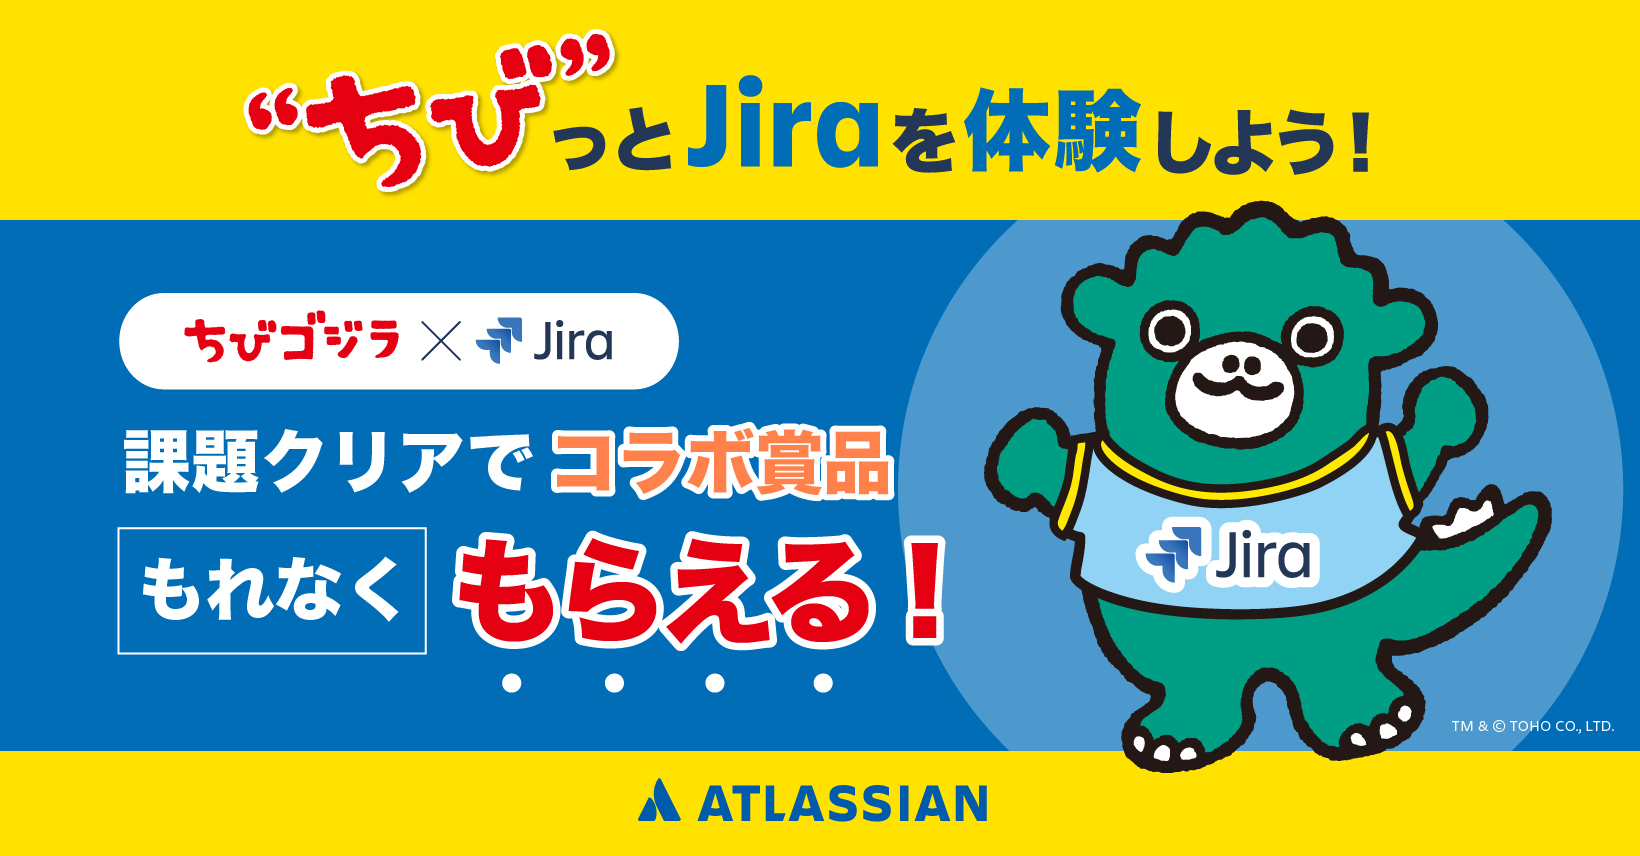 ちび っとjiraにチャレンジ Atlassian Japan 公式ブログ アトラシアン株式会社